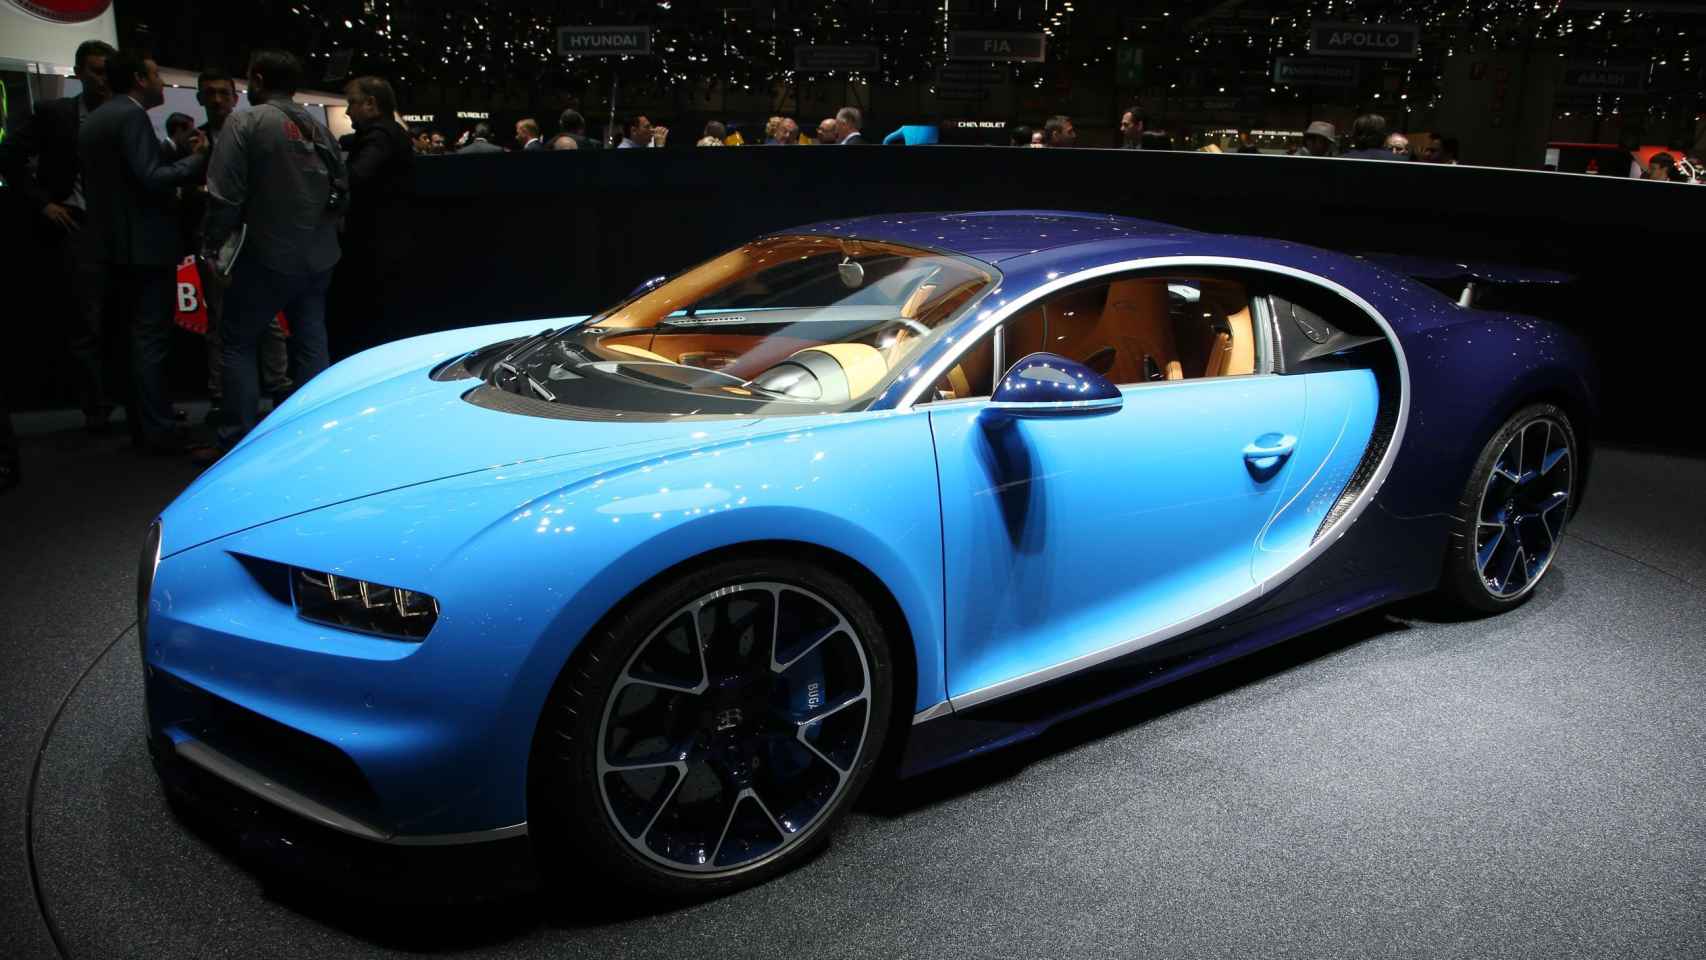 El sustituto del Bugatti Veyron es el Chiron, estrenado por todo lo alto en la ciudad helvética. Su estética es toda una provocación hacia los sentidos, pero lo más interesante está en lo que no se ve a simple vista, en este caso su tecnología. Esta joya sobre ruedas incorpora un motor de gasolina 8.0 de 16 cilindros en W, con cuatro turbocompresores y con una potencia descomunal de 1.500 CV. Con esta base mecánica, desde Bugatti aseguran que su misil es capaz de acelerar de 0 a 100 km/h en poco más de 2 segundos.